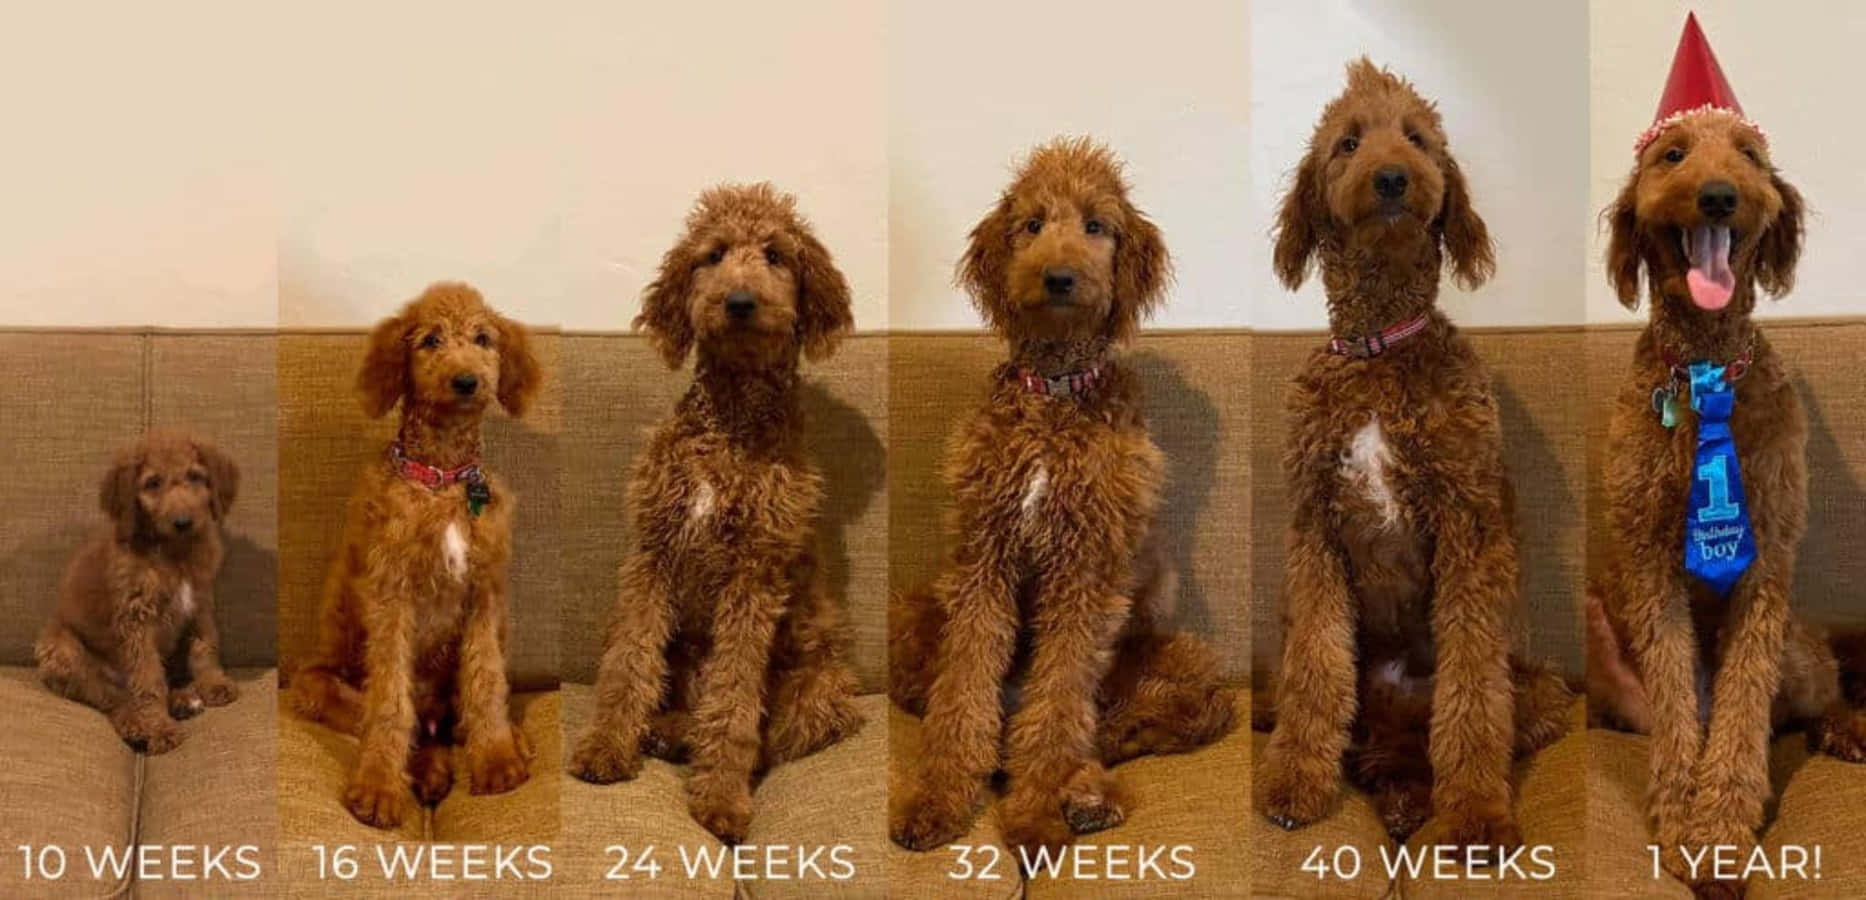 Crescitadel Cucciolo Settimana Dopo Settimana - Immagine Di Un Goldendoodle